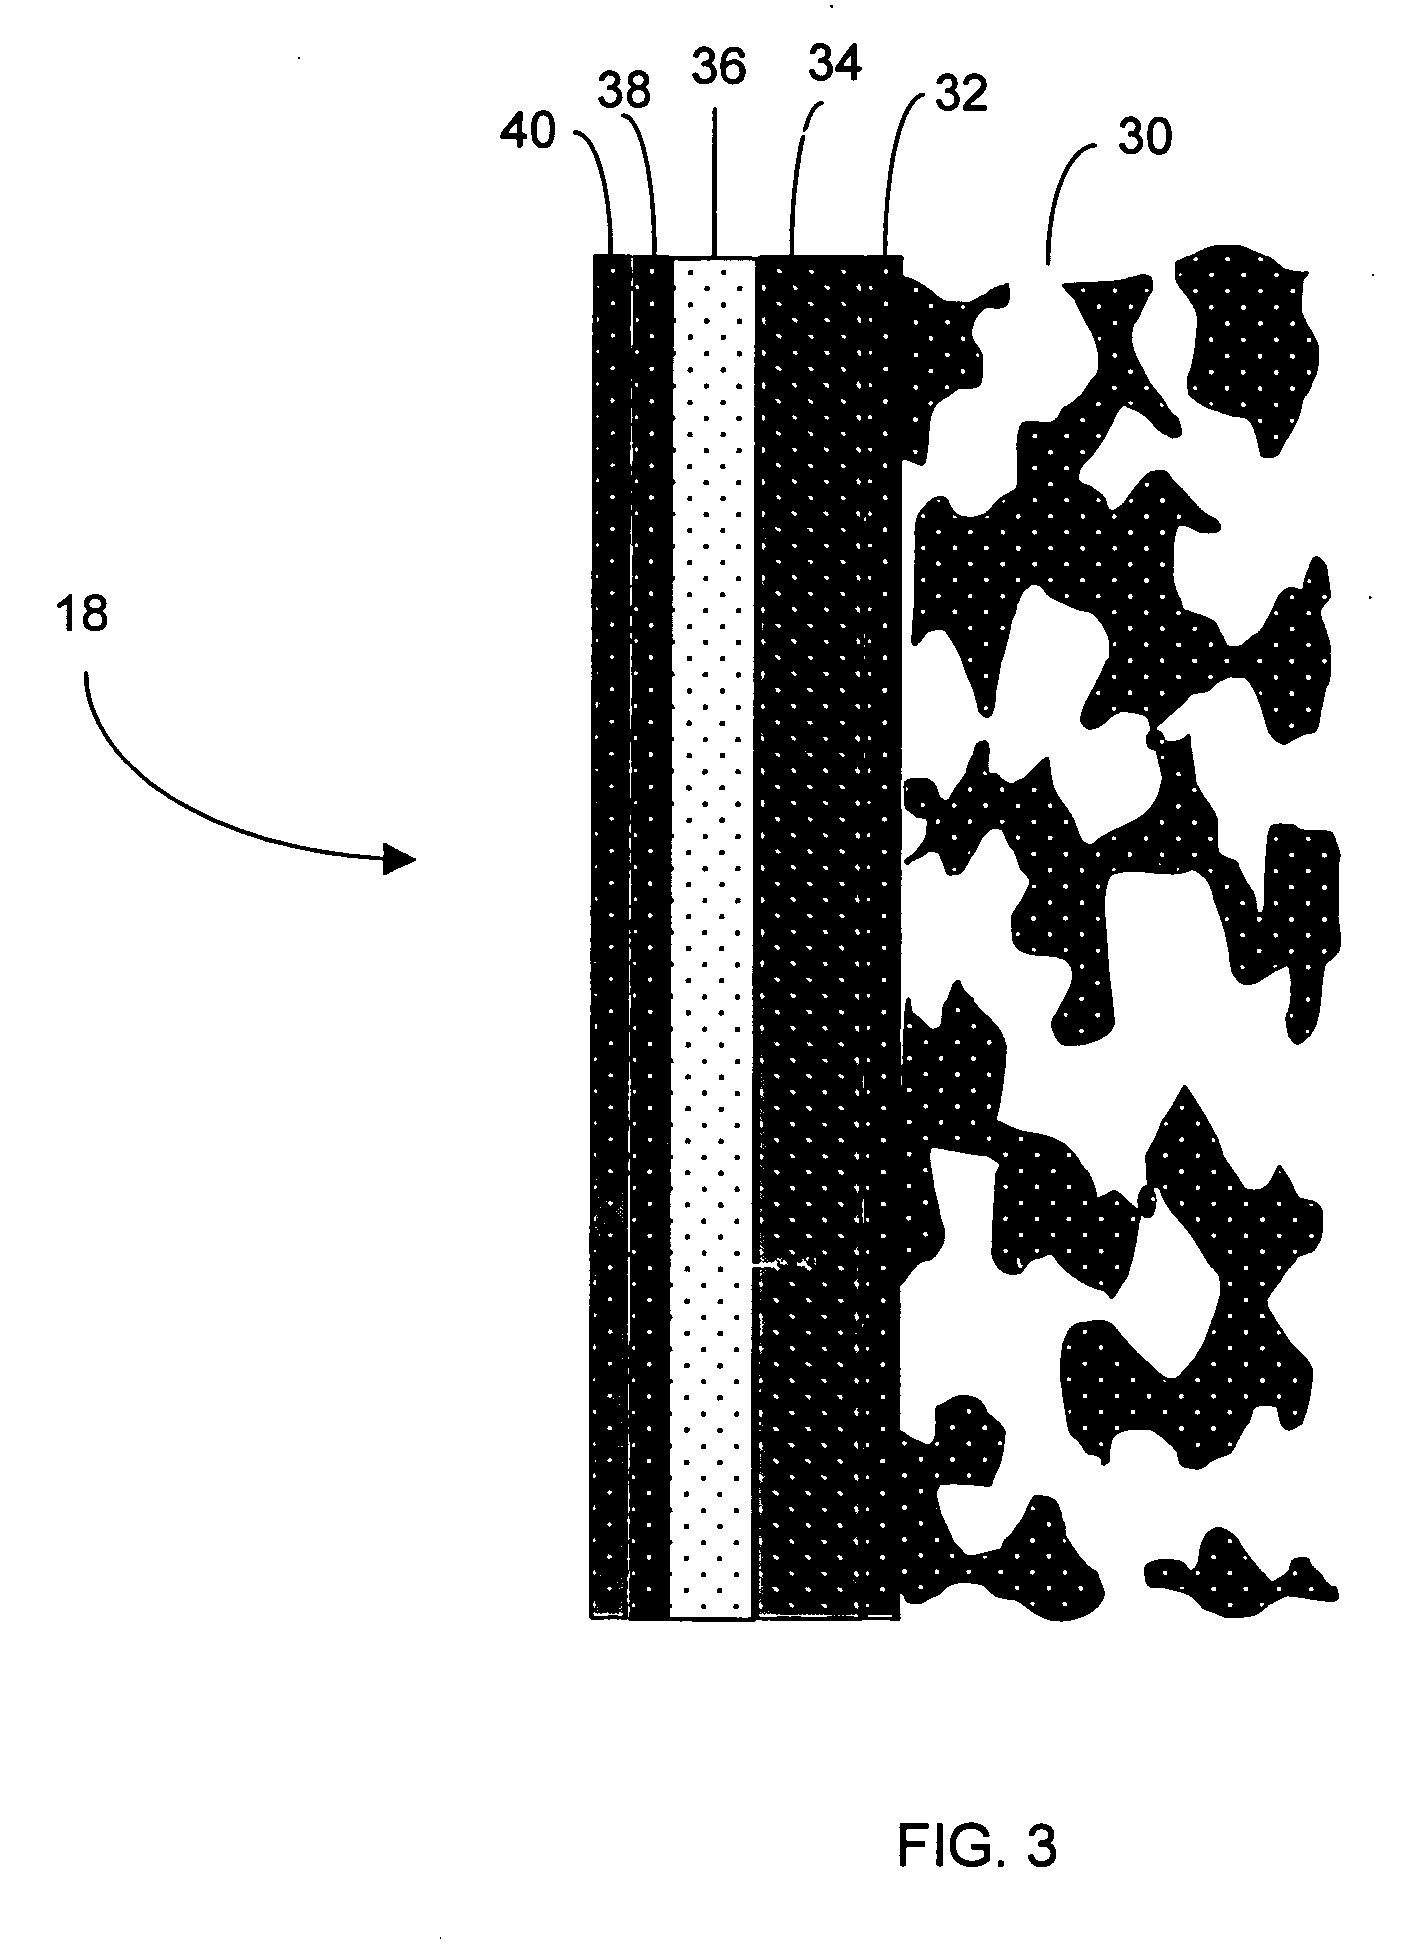 Silicone composition for biocompatible membrane